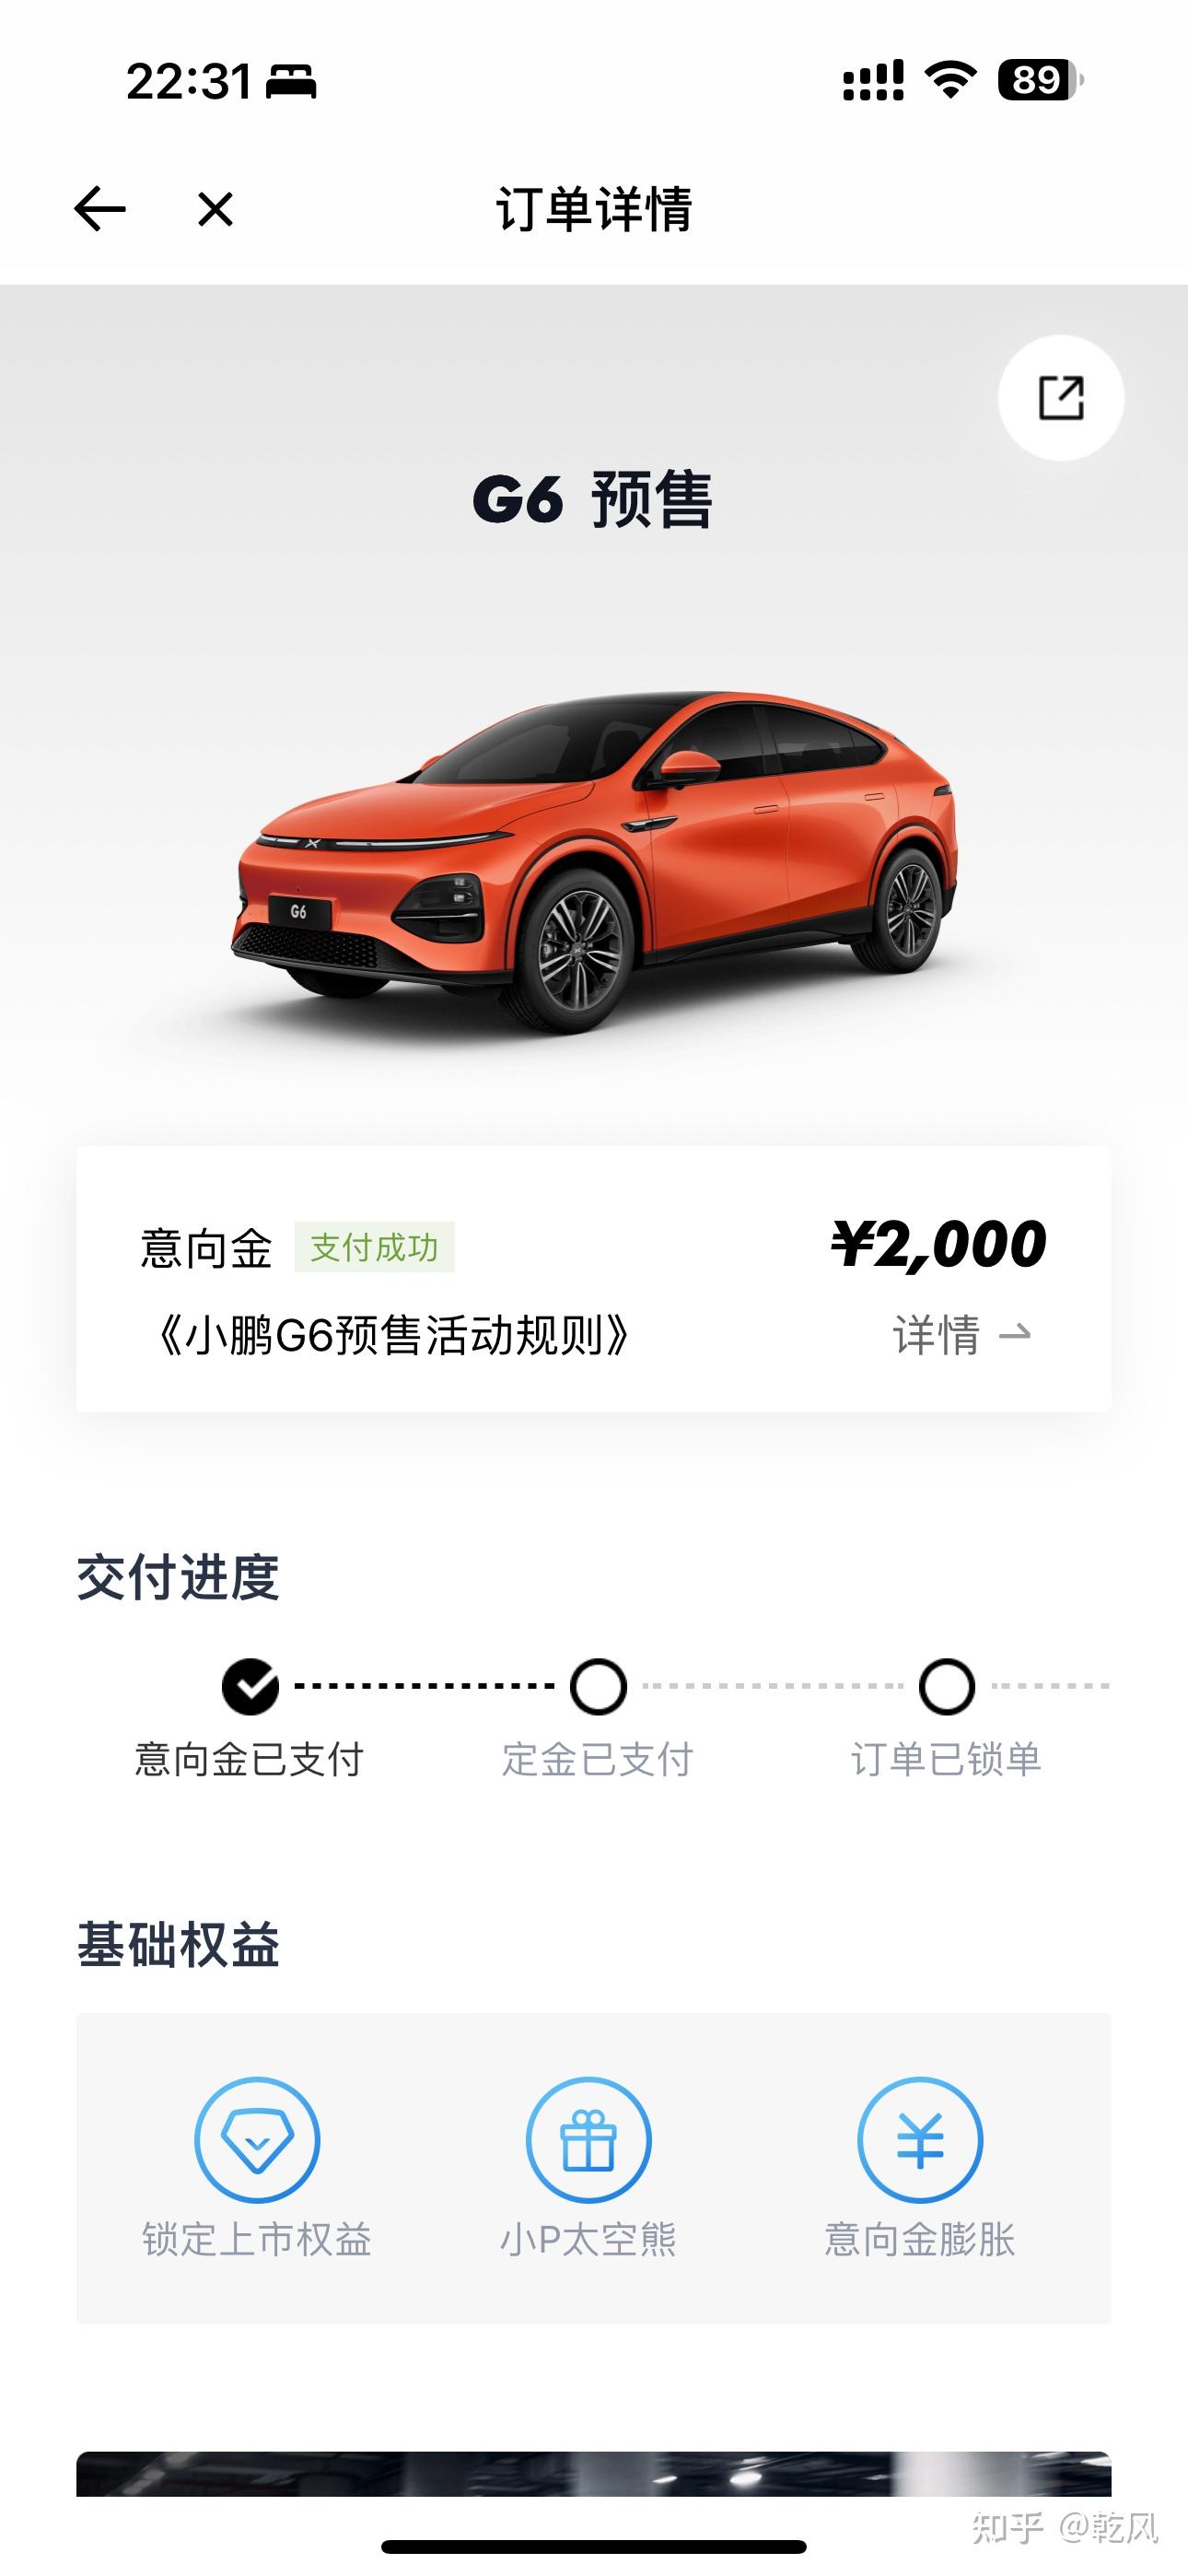 小鹏汽车官微宣布,小鹏 g6 72 小时预订用户超 2